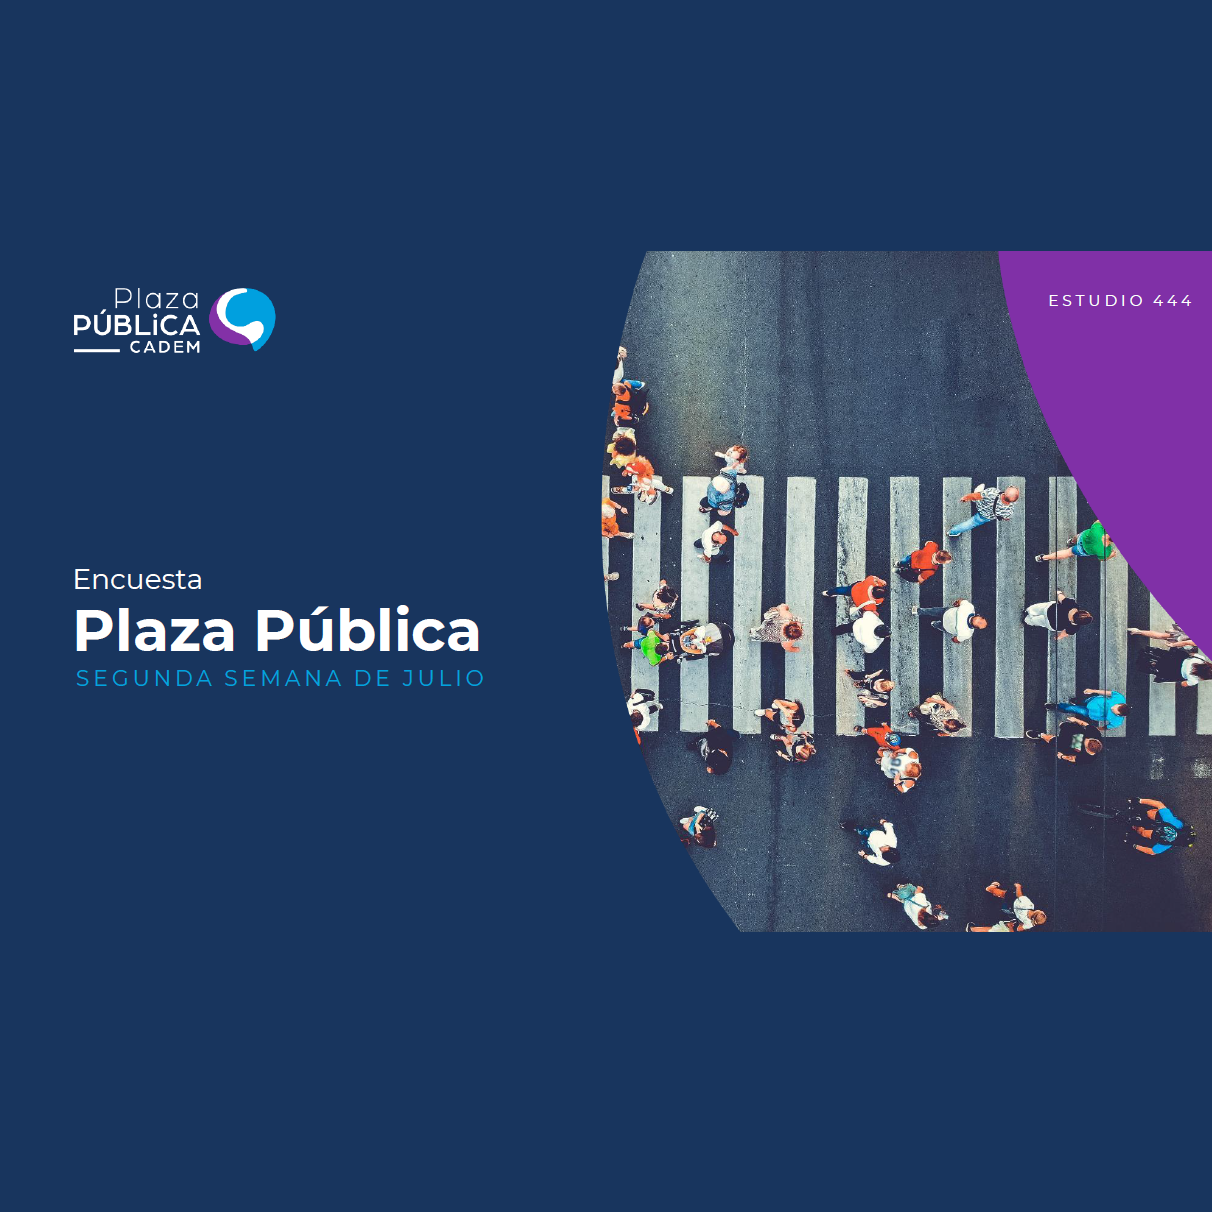 Plaza pública Cadem – Segunda semana de julio